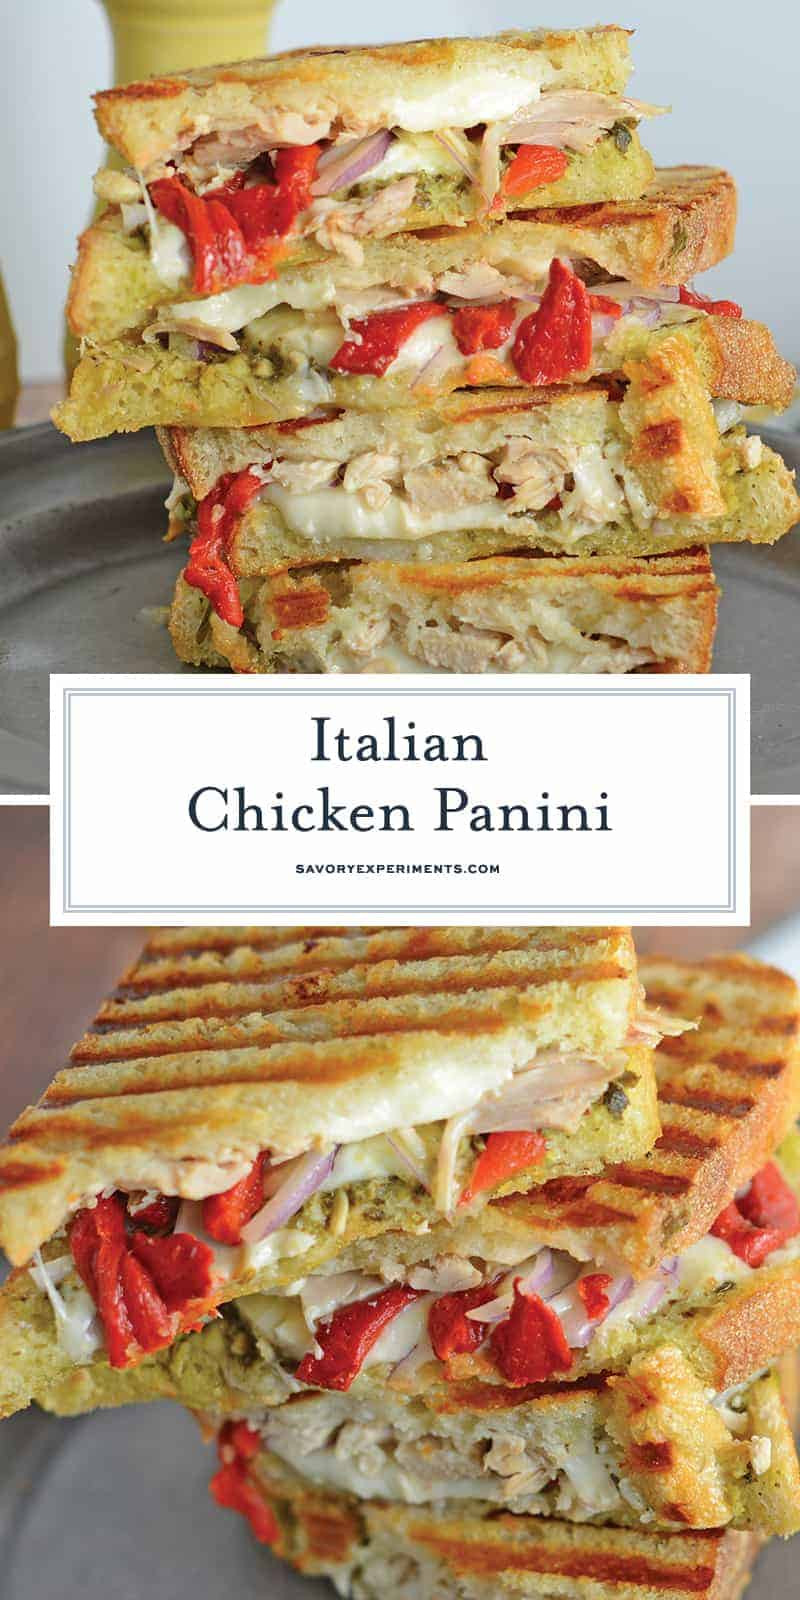 Italian Panini Recipes
 Italian Chicken Panini The Best Chicken Panini Sandwich